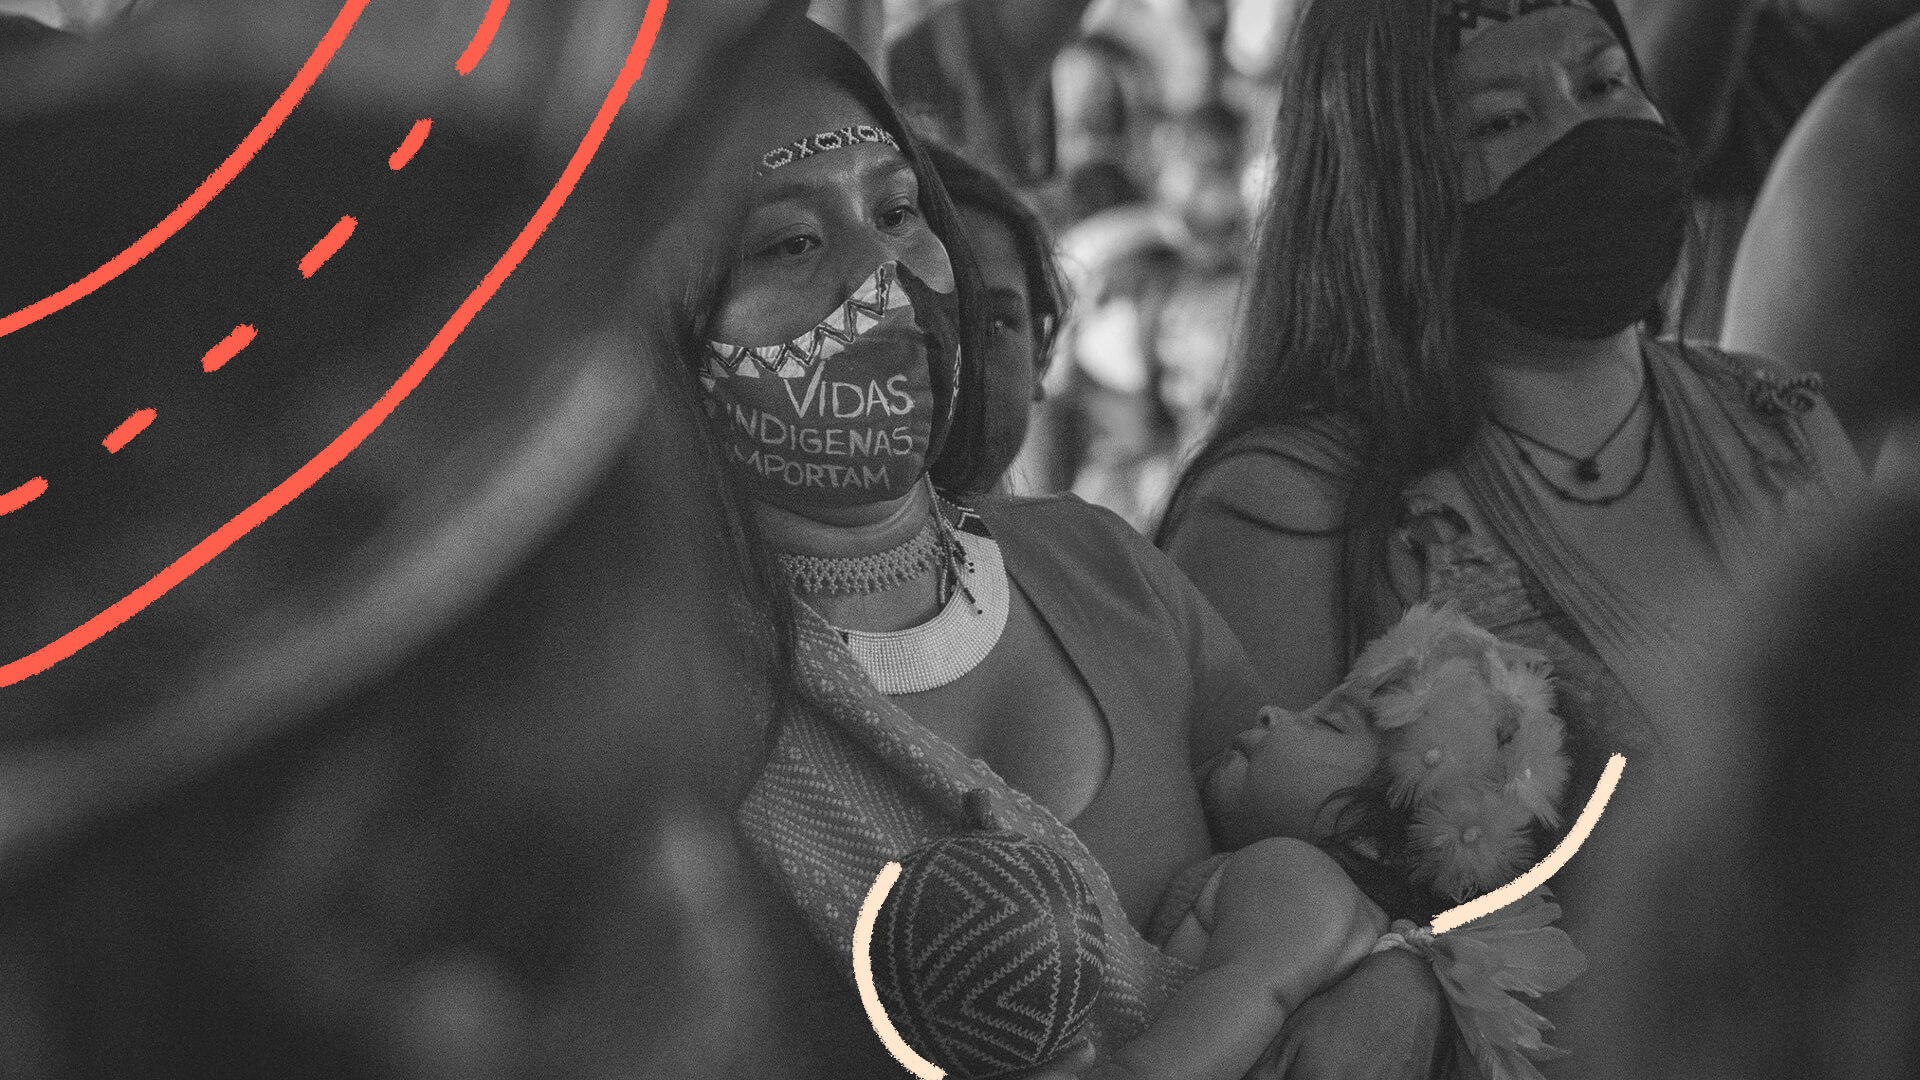 Foto em preto e branco de mulheres indígenas. A mulher em primeiro plano usa máscara e carrega no colo um bebê. A matéria é sobre Mortes violentas de crianças no AM